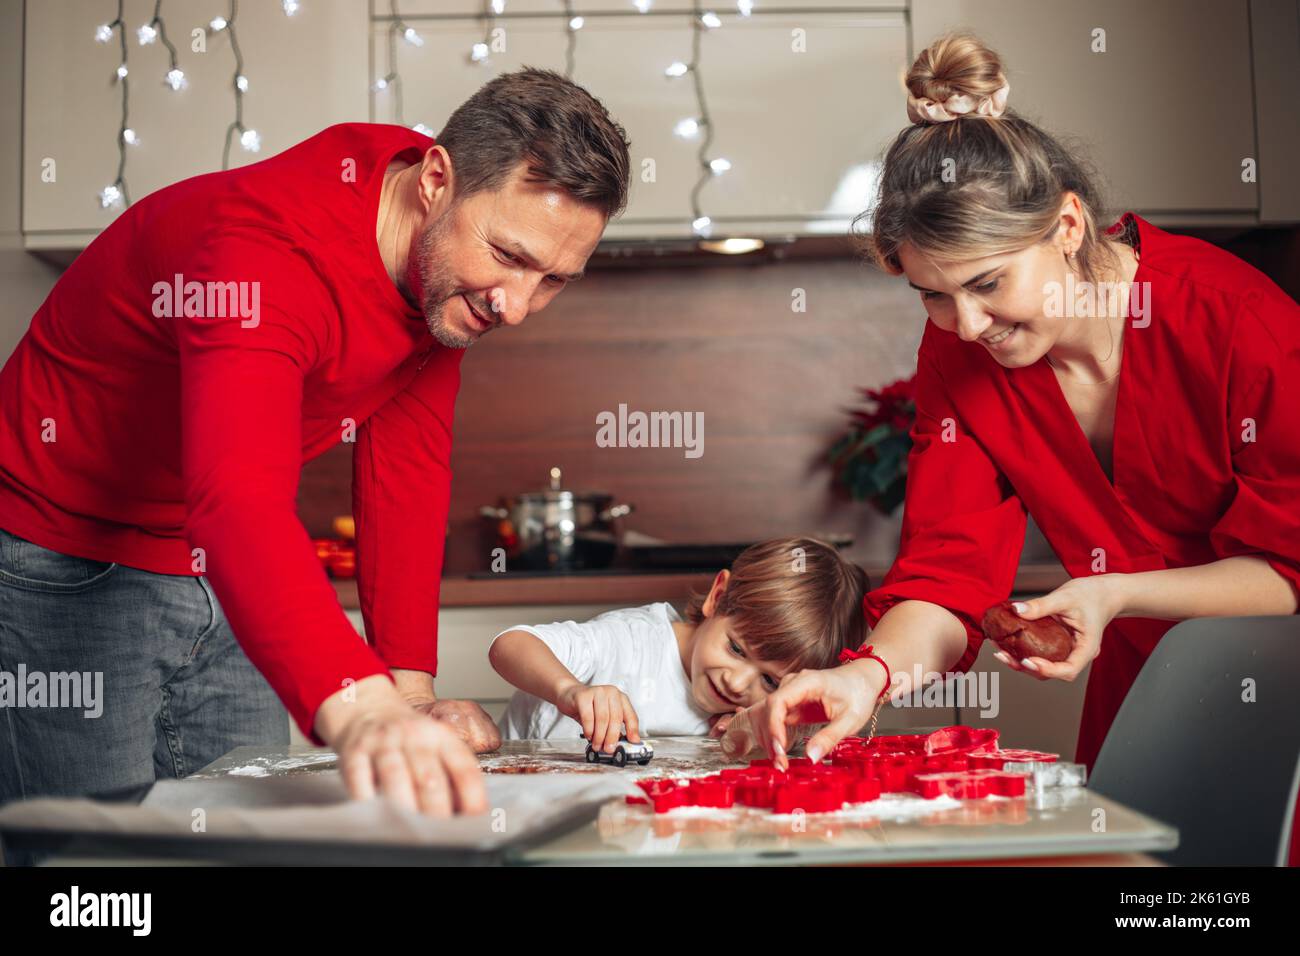 Atmosphère de bonheur, confort de Noël. La famille, le père, la mère et le fils cuisent des biscuits dans une cuisine confortable à la maison. Vêtu de rouge. Travail d'équipe. Banque D'Images